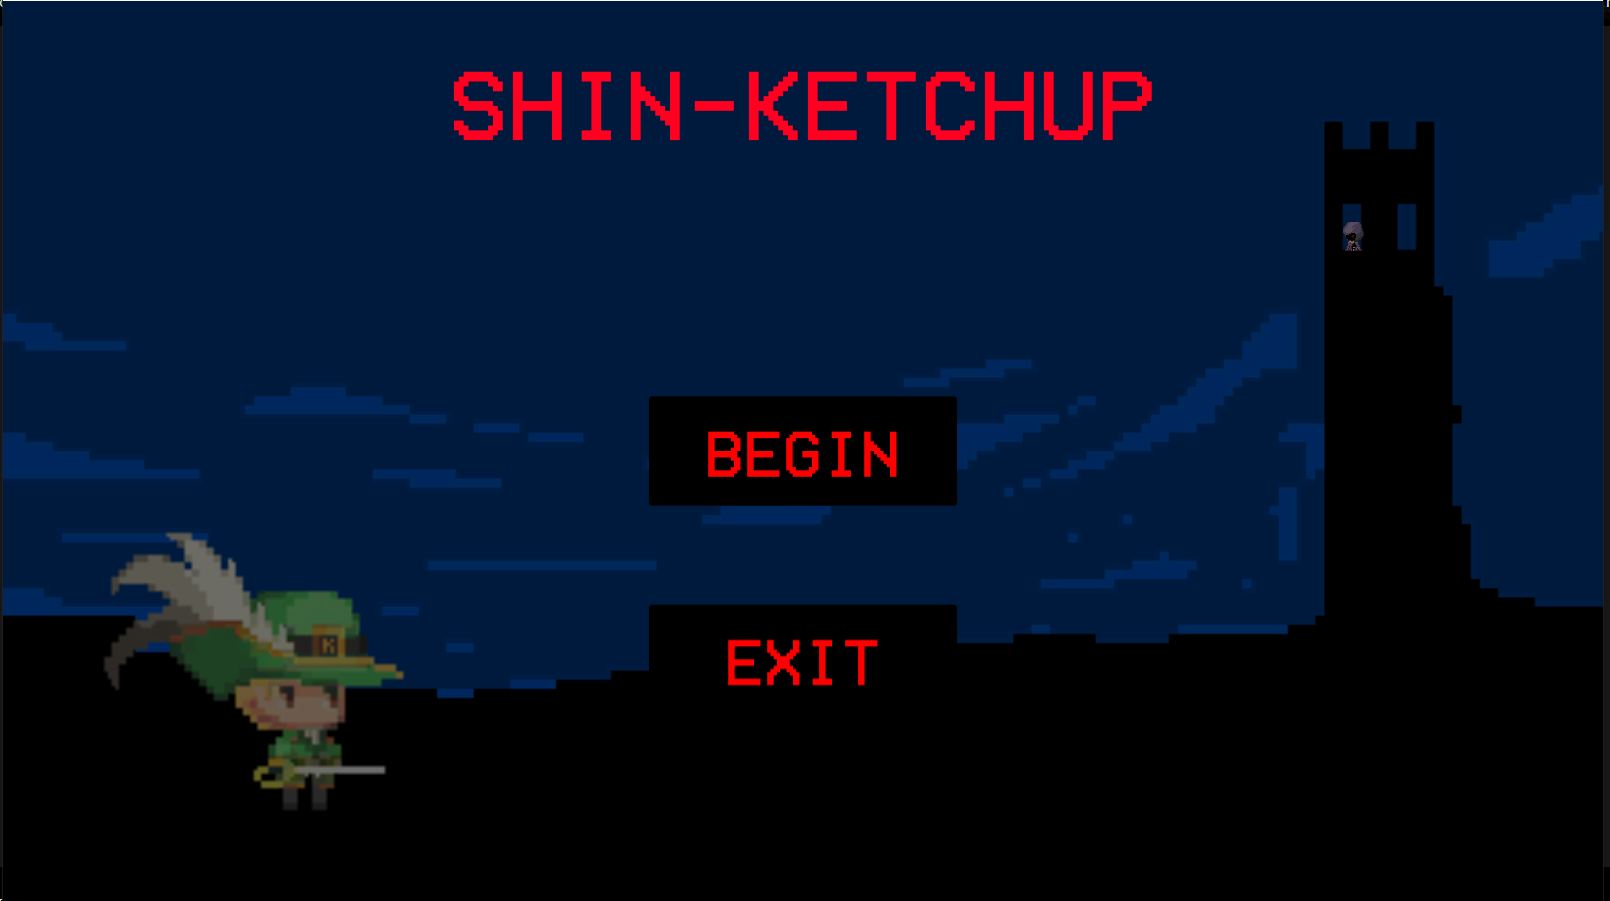 Shin-Ketchup